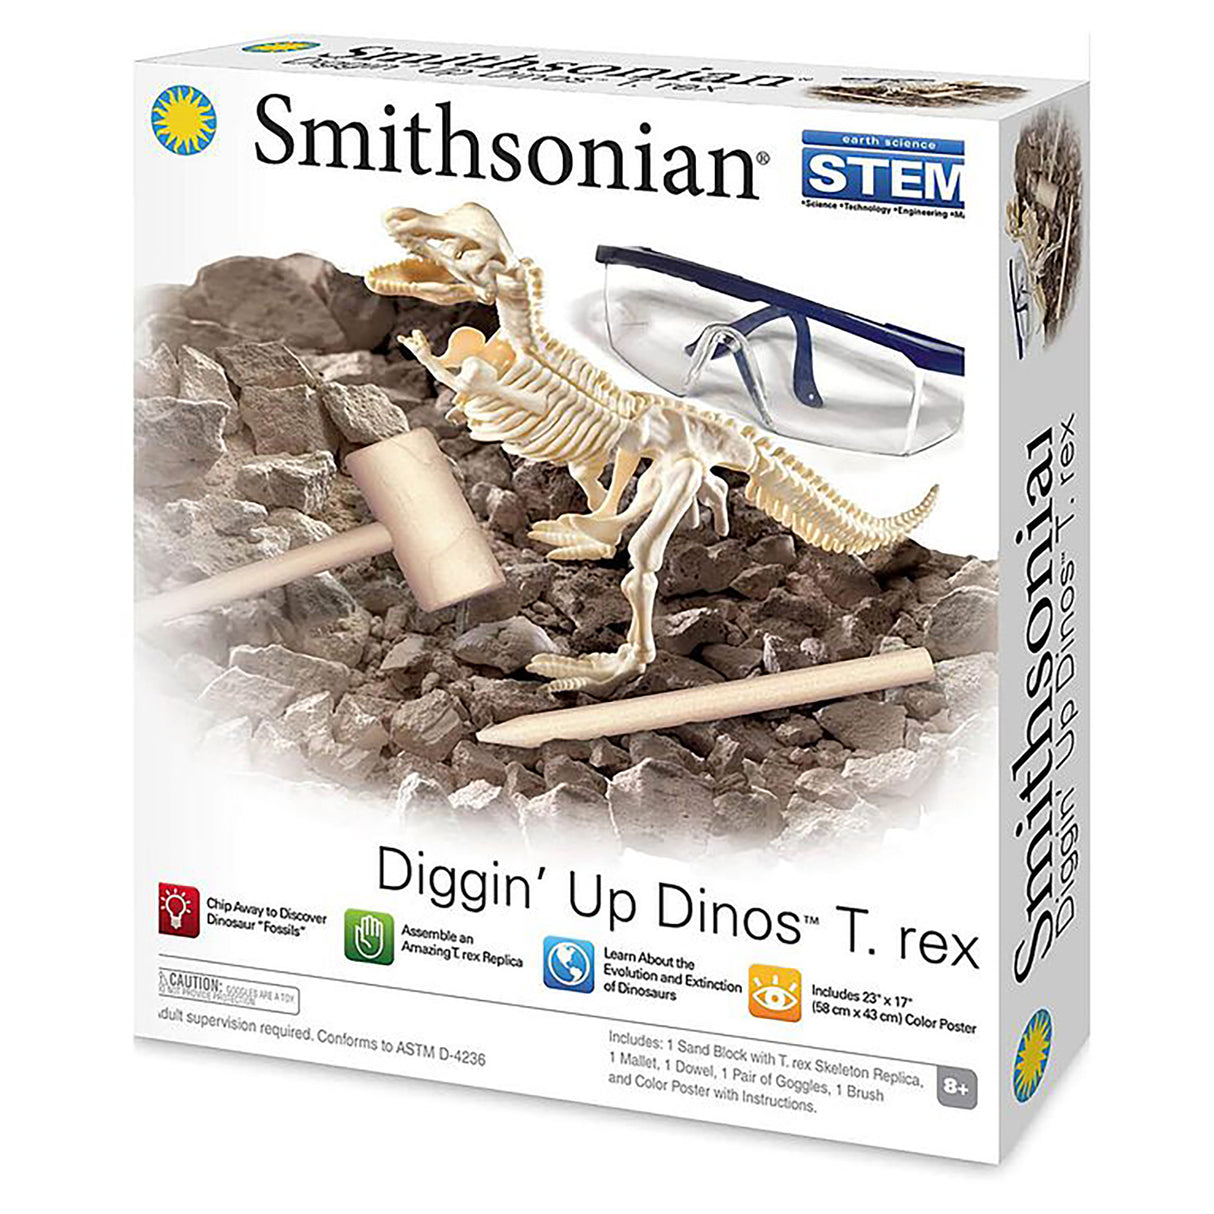 Smithsonian Diggin' Up Dinos T. Rex Excavation Kit